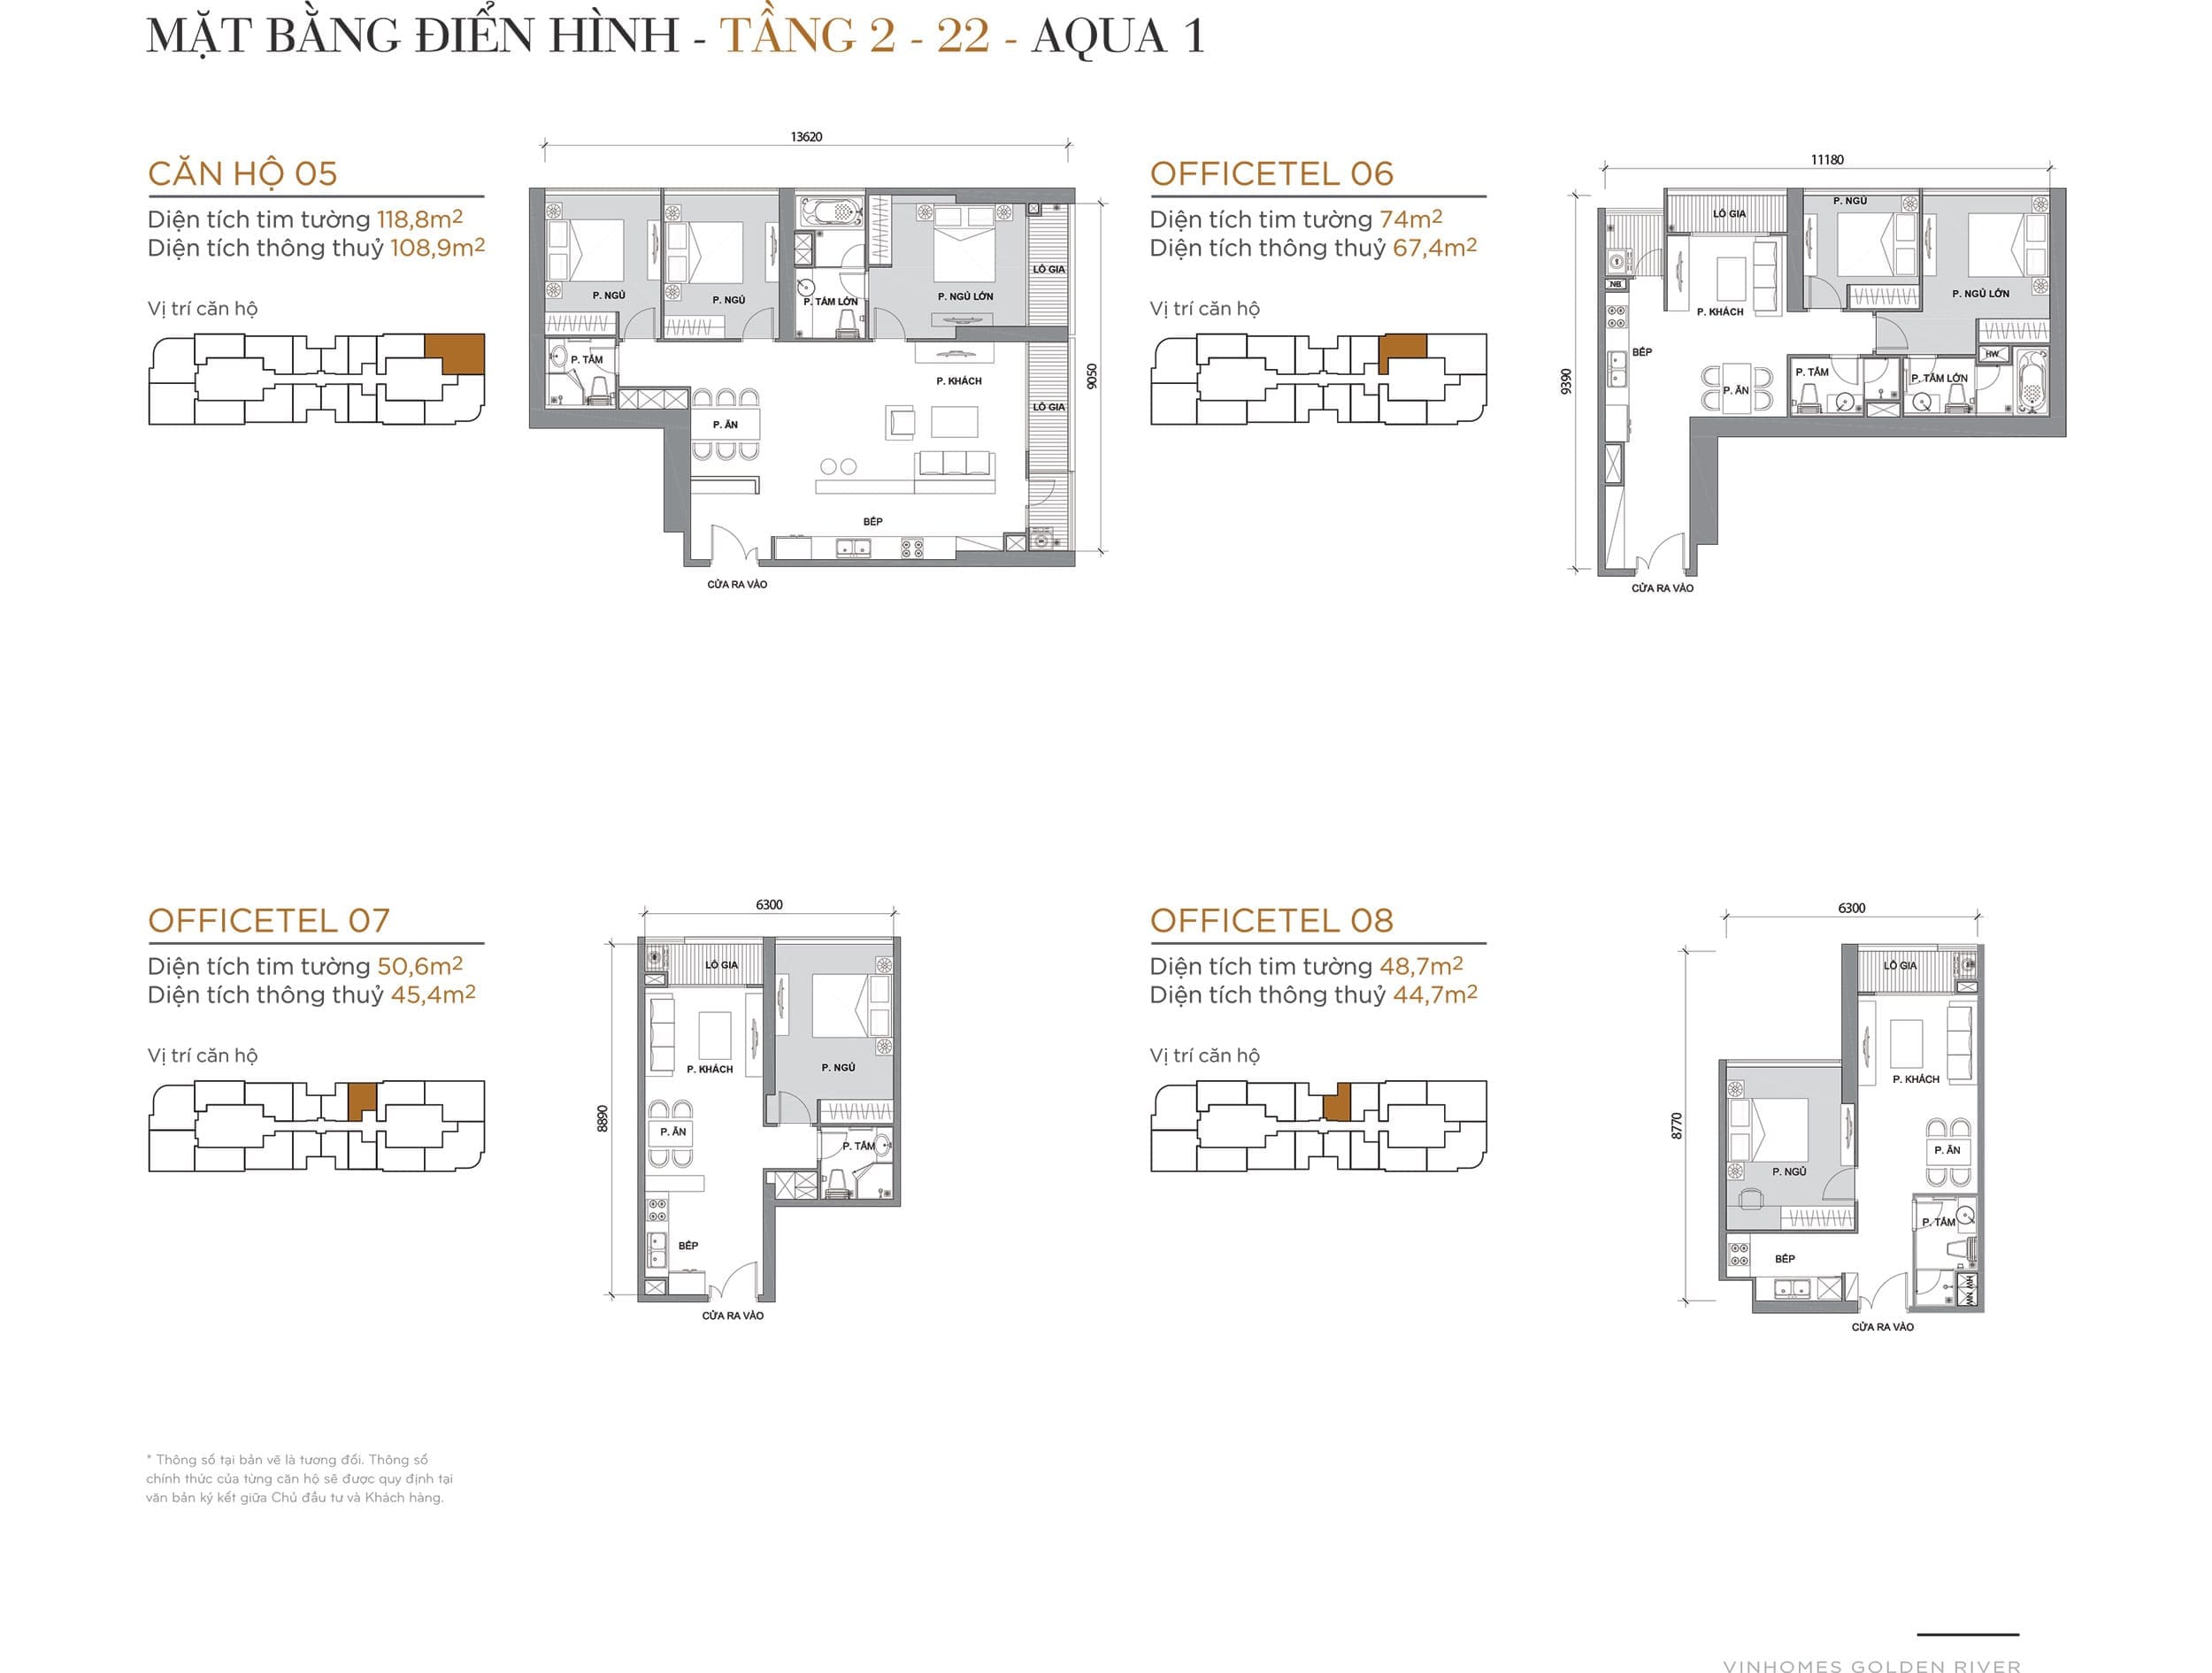 Layout căn hộ điển hình tầng 02 đến tầng 22 tòa Aqua 1 loại Căn hộ 05, Officetel 06, Officetel 07, Officetel 08.